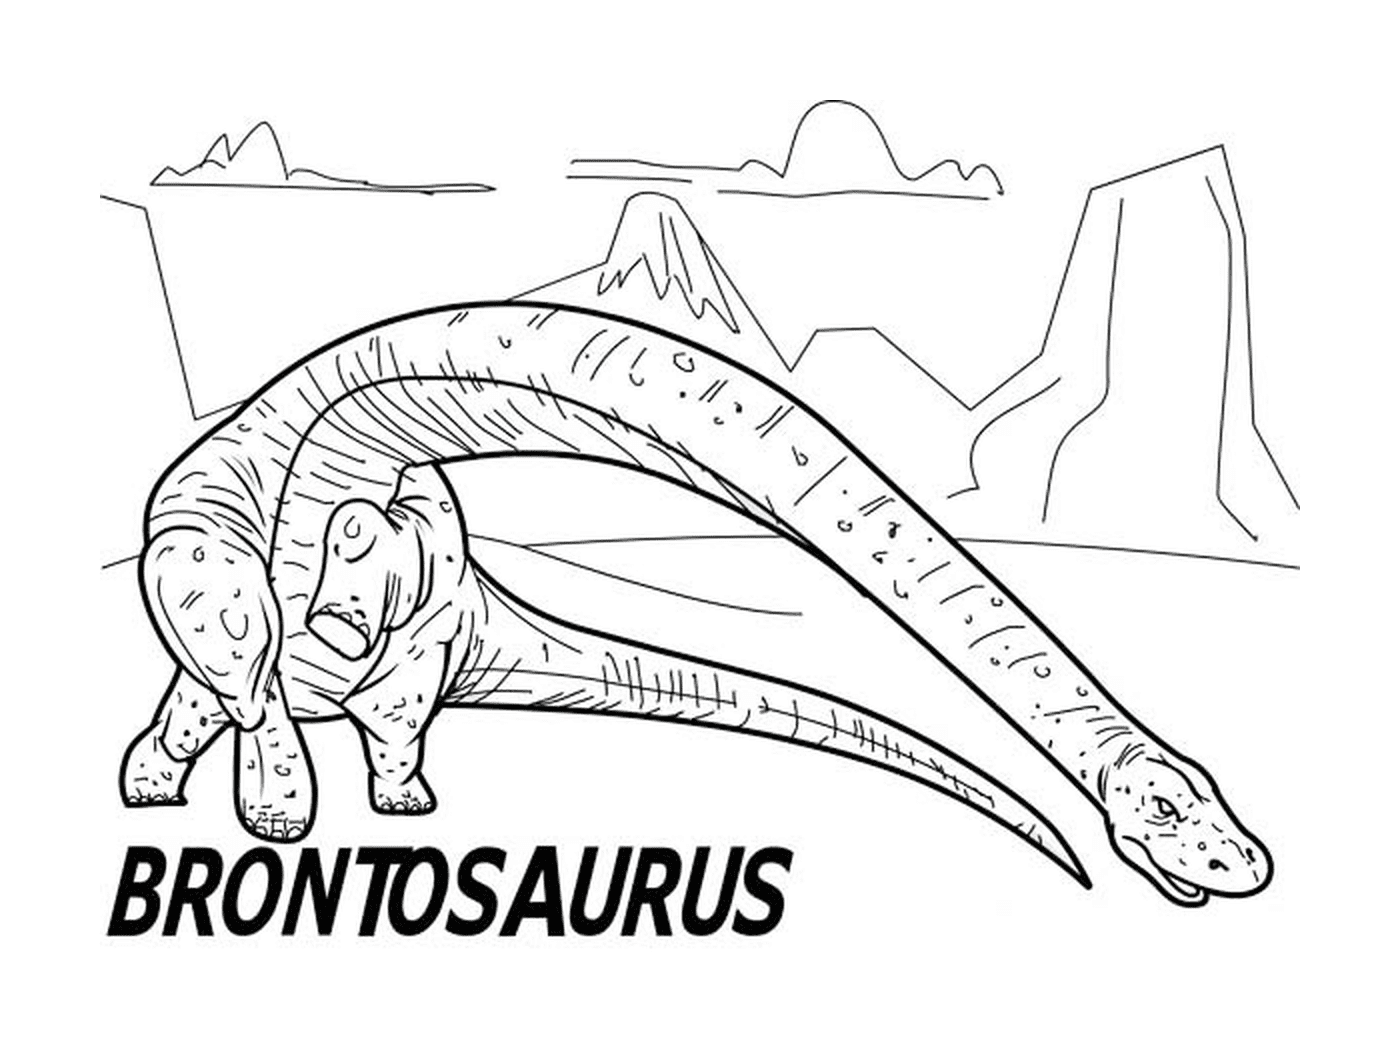  برونتو من الجوراسيك، مواجهة مع الديناصورات 